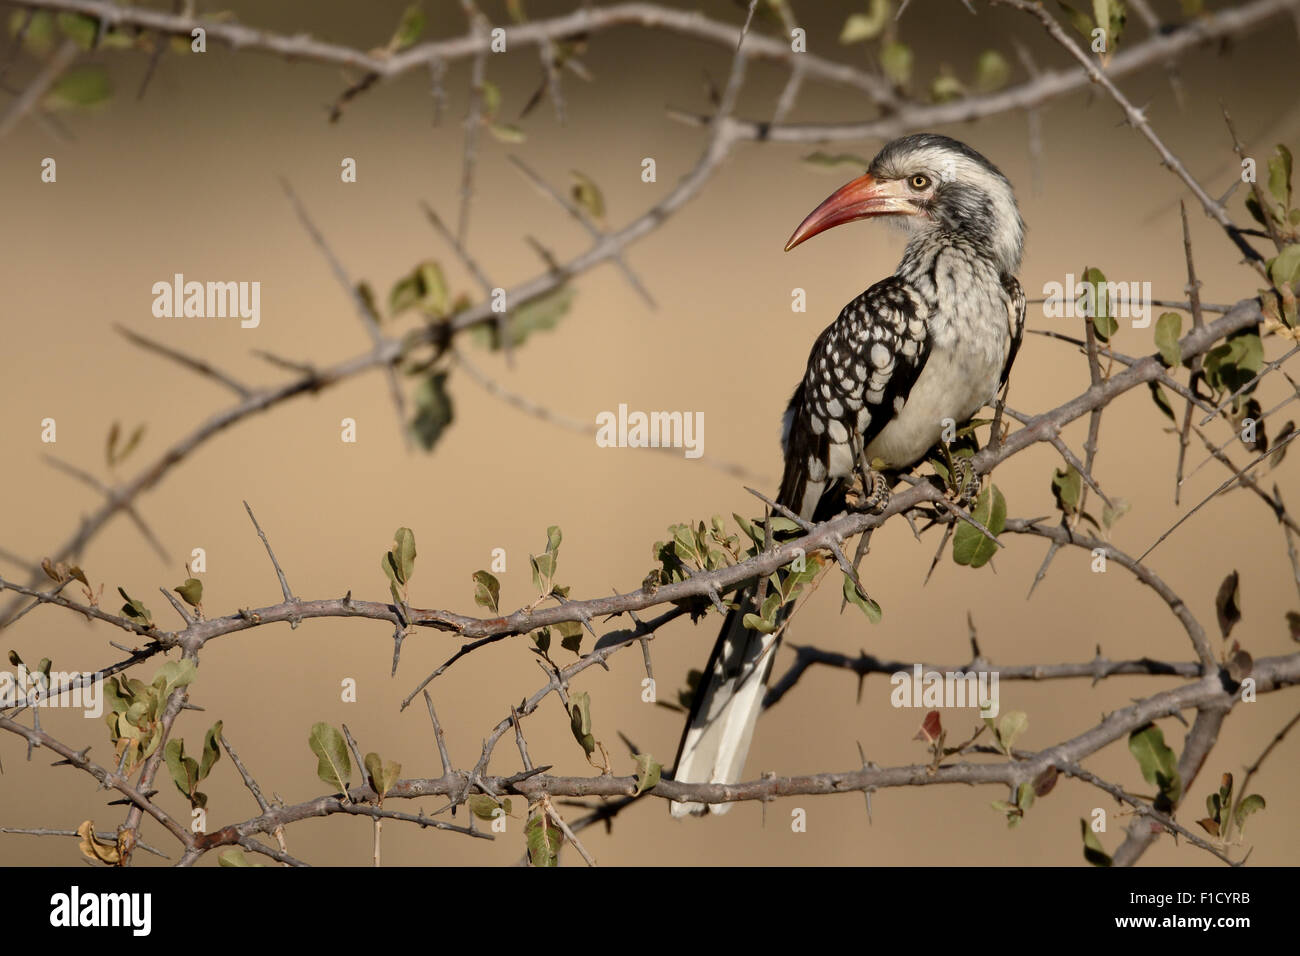 Calao à bec rouge, Tockus erythrorhynchus, seul oiseau sur la branche, Afrique du Sud, août 2015 Banque D'Images